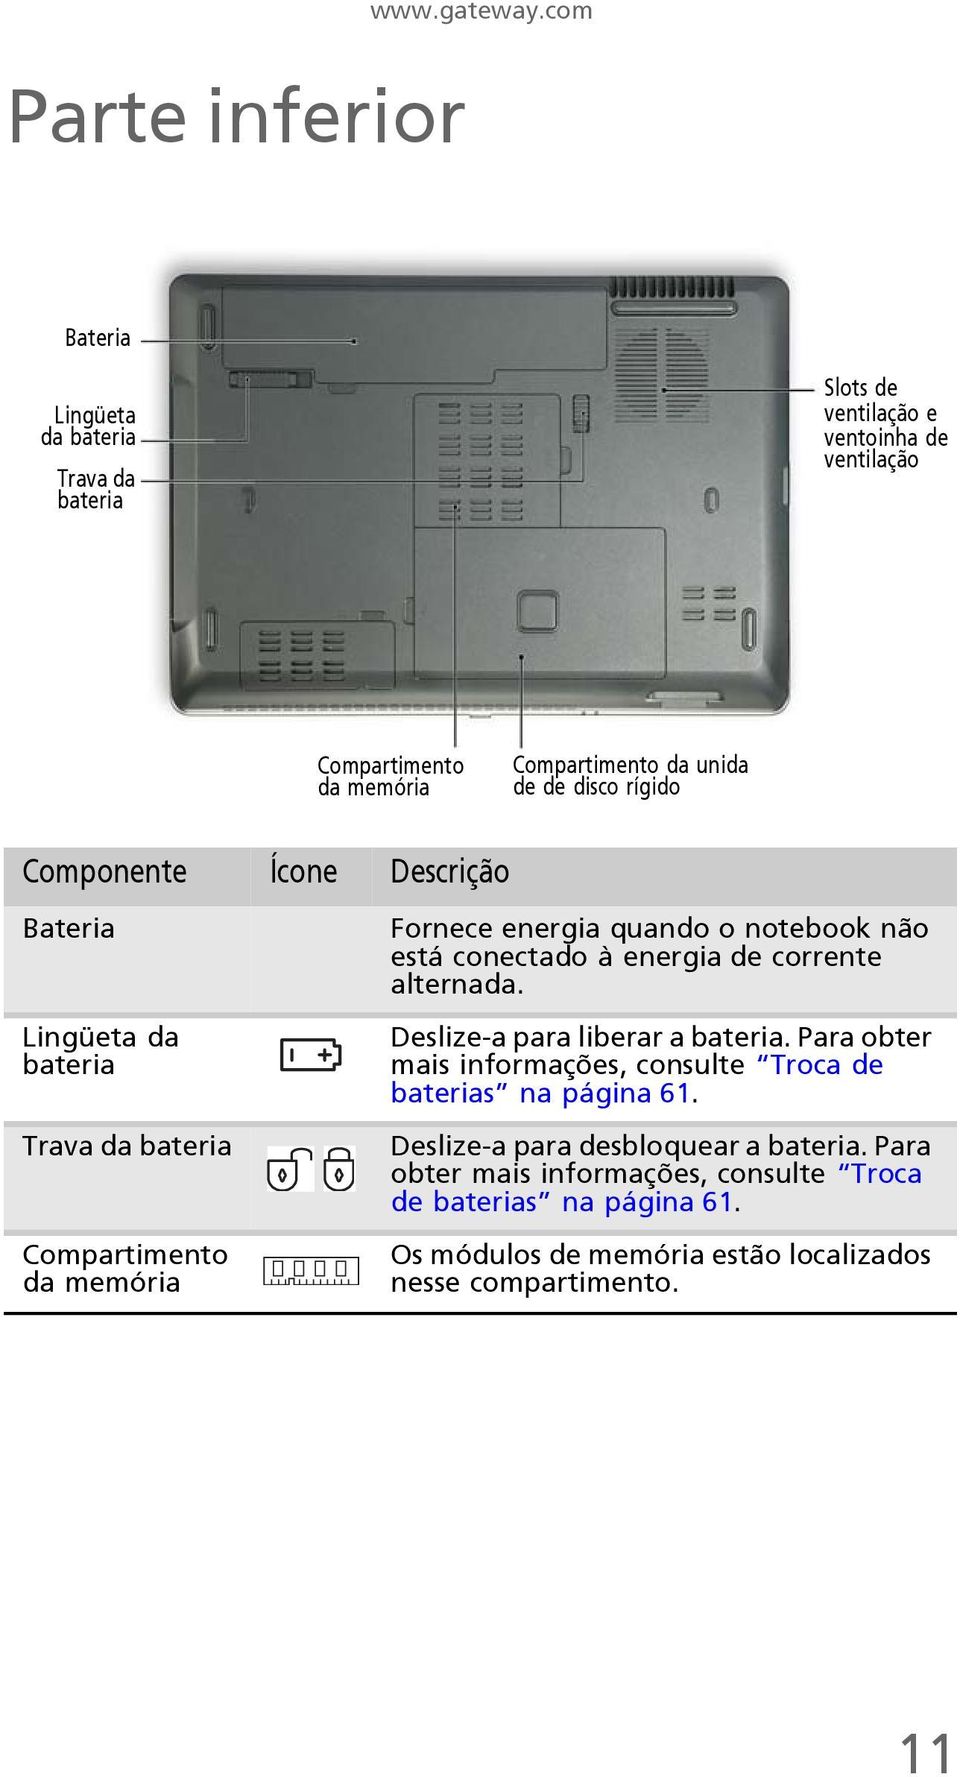 Componente Ícone Descrição Bateria Lingüeta da bateria Trava da bateria Compartimento da memória Fornece energia quando o notebook não está conectado à energia